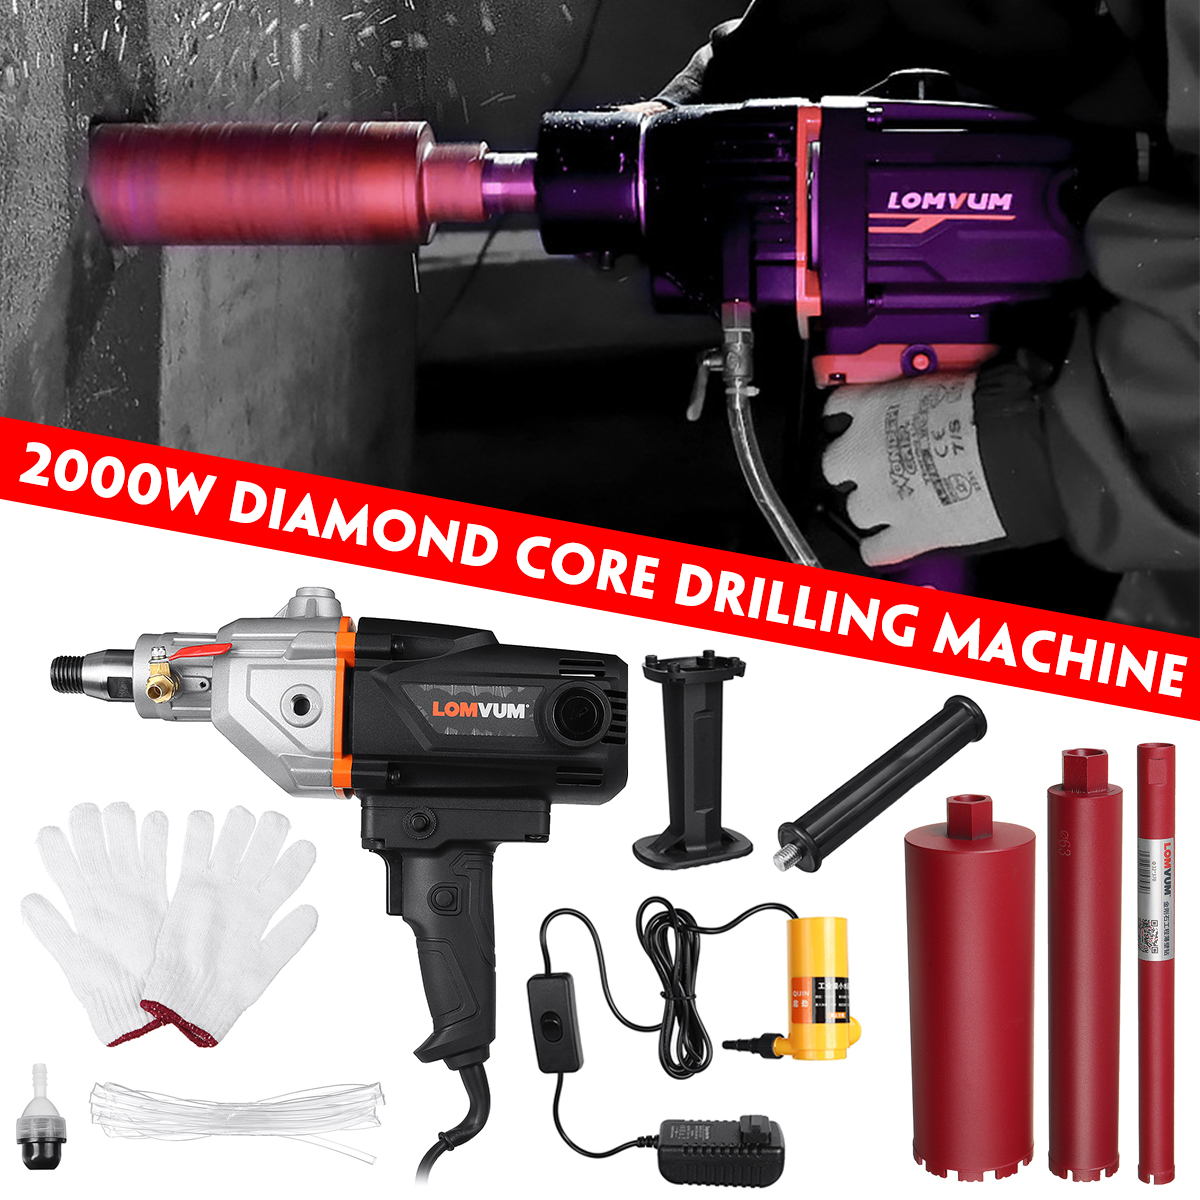 2000W-Diamond-Core-Drilling-Machine-Drill-WetDry-Concrete-Machine-Nozzle-Bits-1794310-1